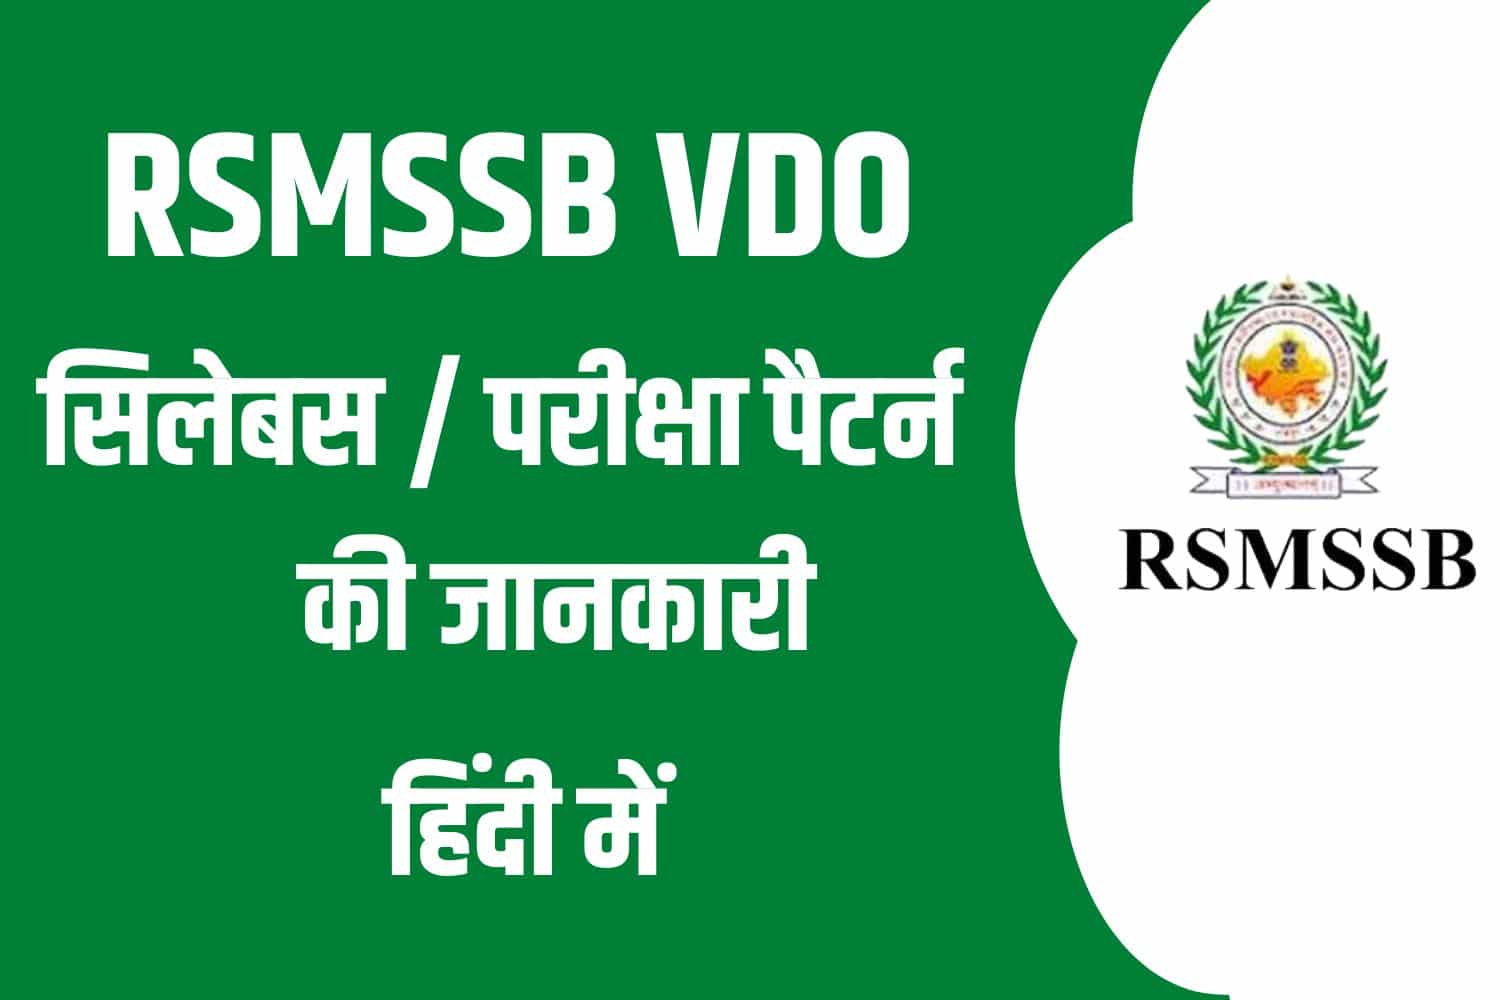 RSMSSB VDO Syllabus In Hindi | राजस्थान VDO सिलेबस हिंदी में